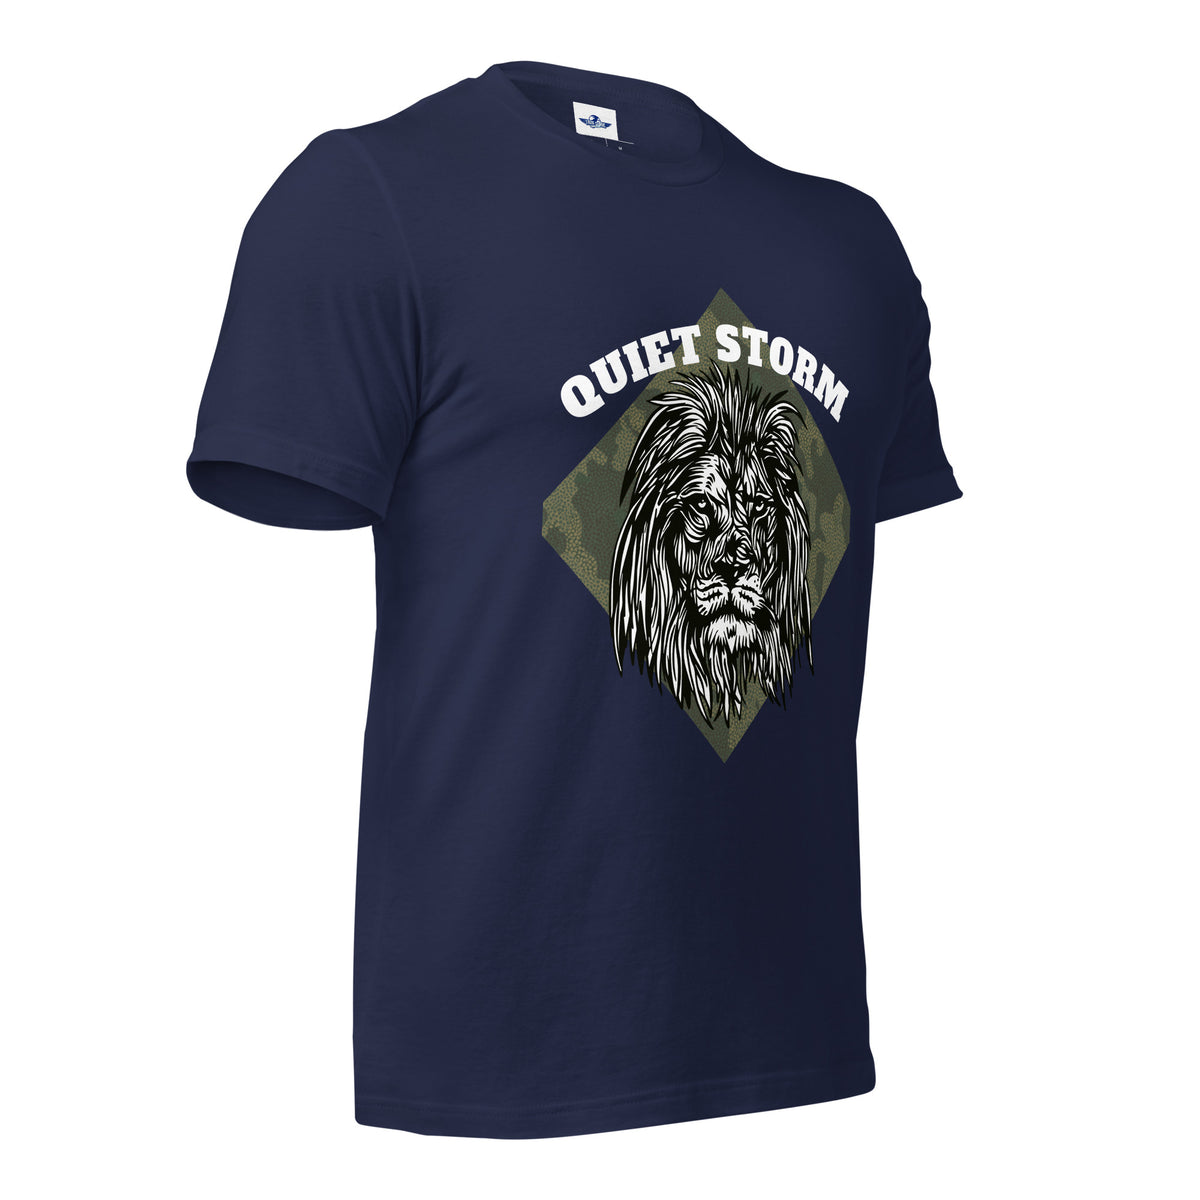 Quiet Storm T-Shirt